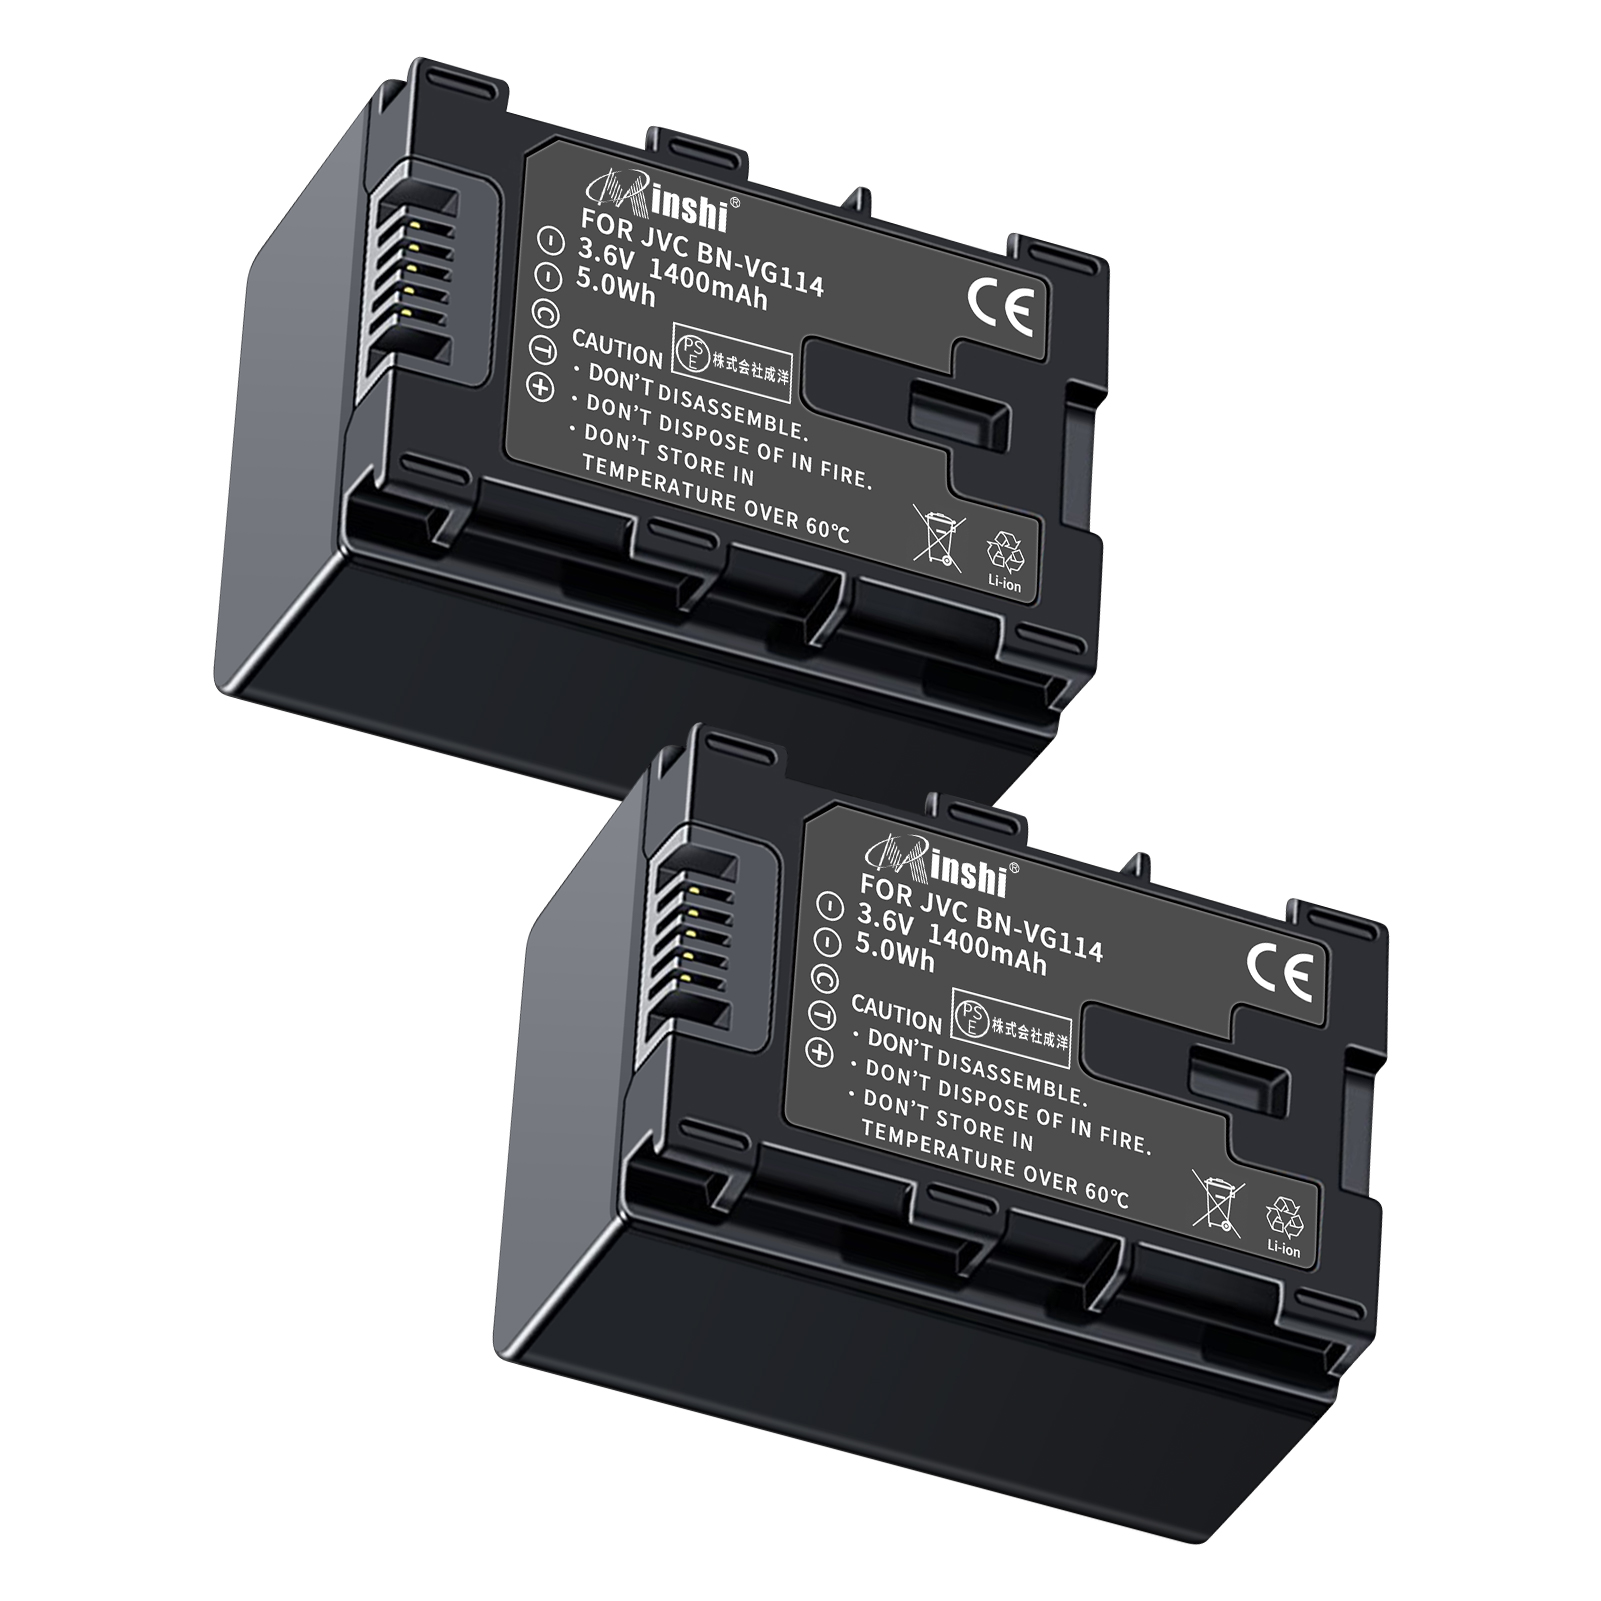 【２個セット】 minshi VICTOR GZ-HM570 BN-VG121 対応 互換バッテリー 1400mAh 高品質交換用バッテリー